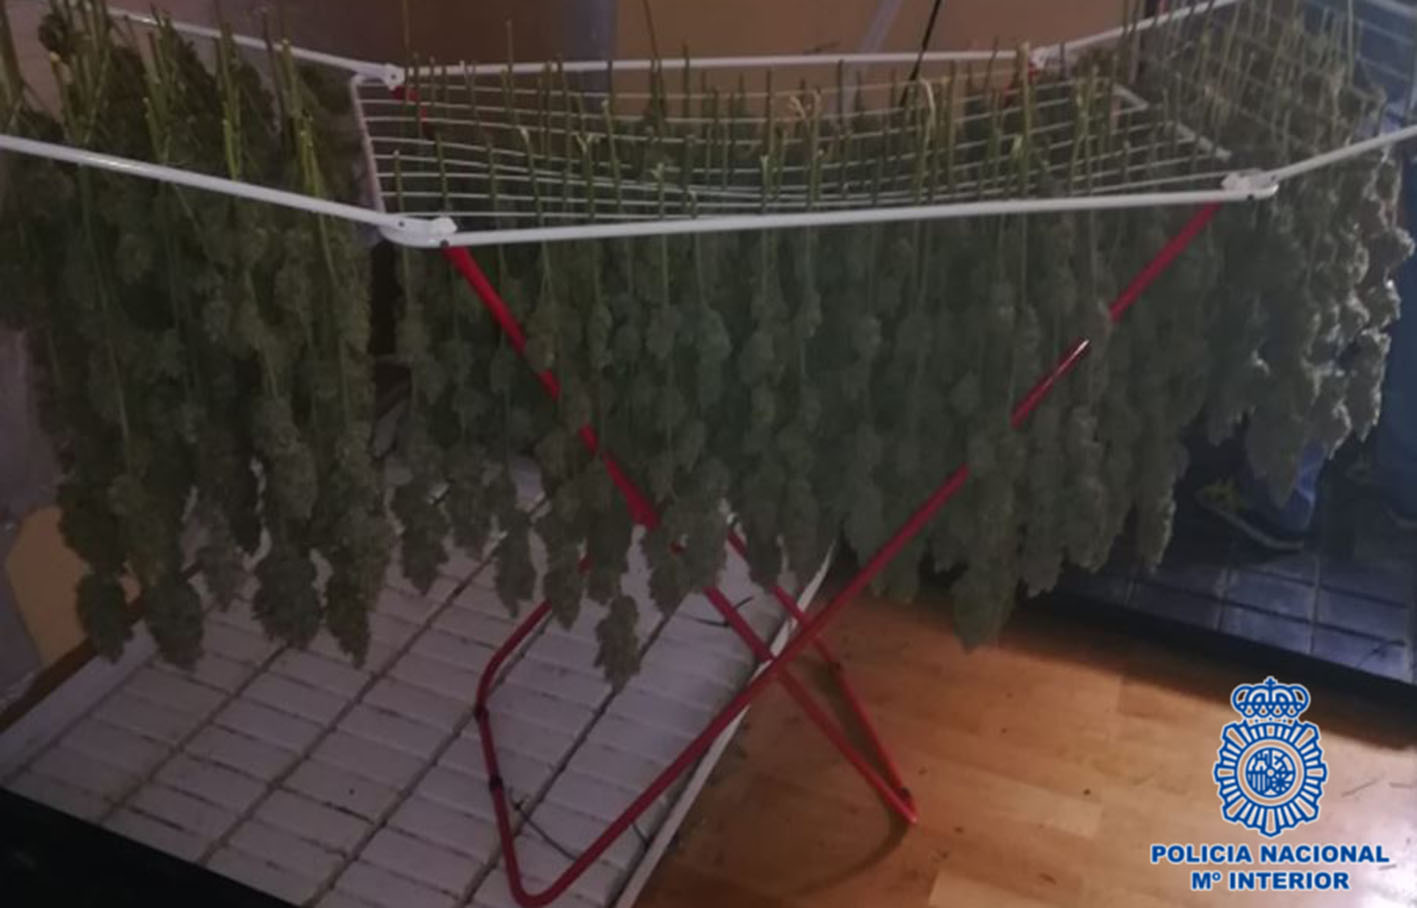 La marihuana se secaba en tendederos para la ropa, como pueden ver en la fotografía.